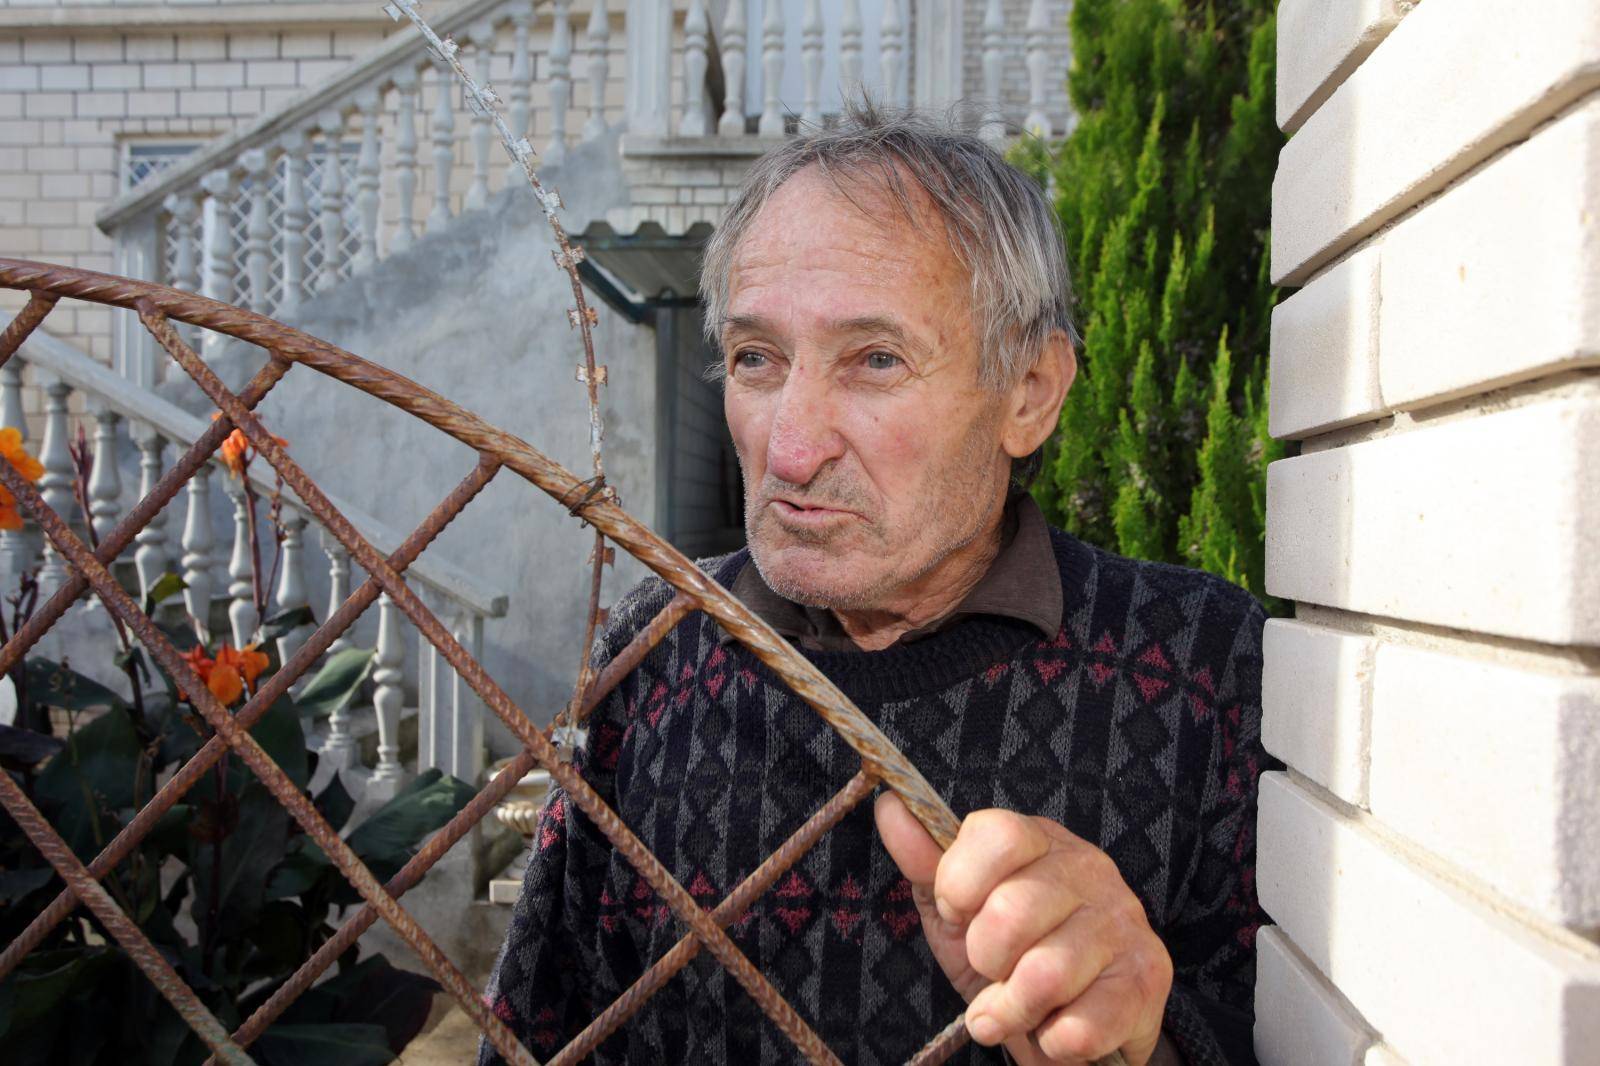 'Neću više, obećavam!': Ima 80 godina i sadi marihuanu u vrtu